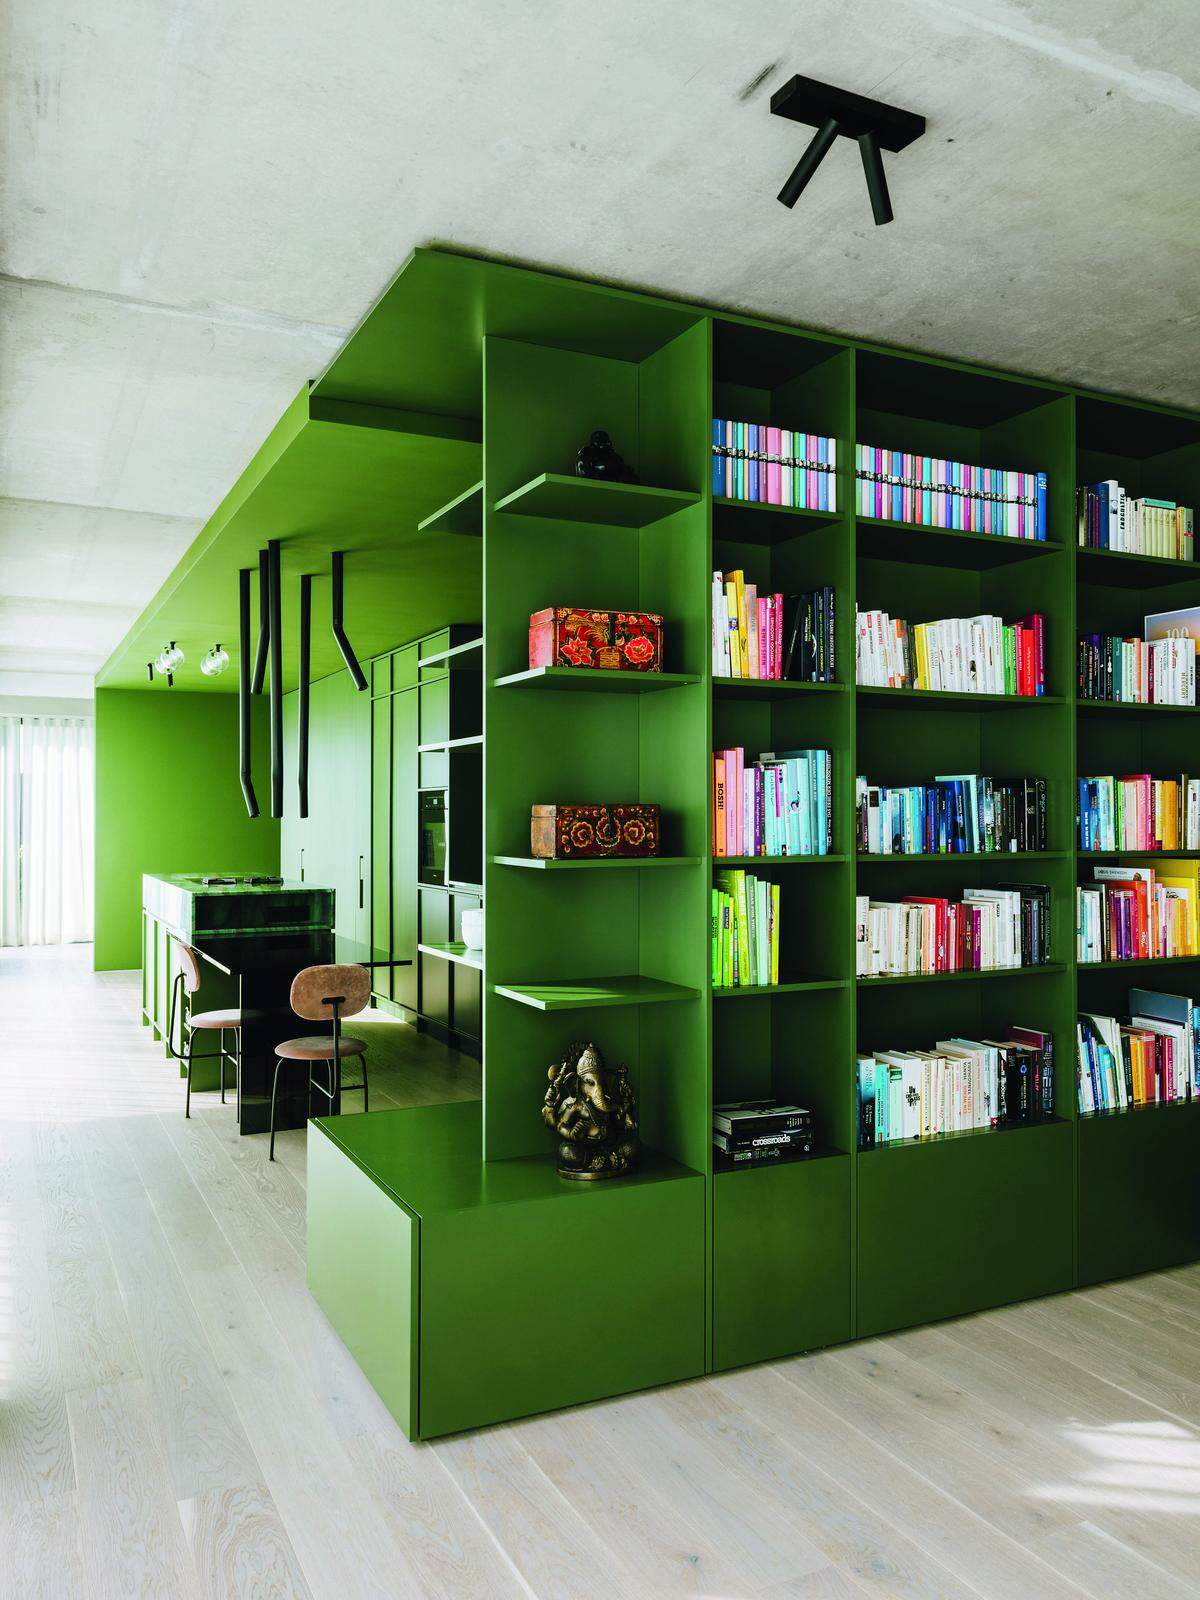 Die äußere Hülle der Green Box dient als Hausbibliothek.